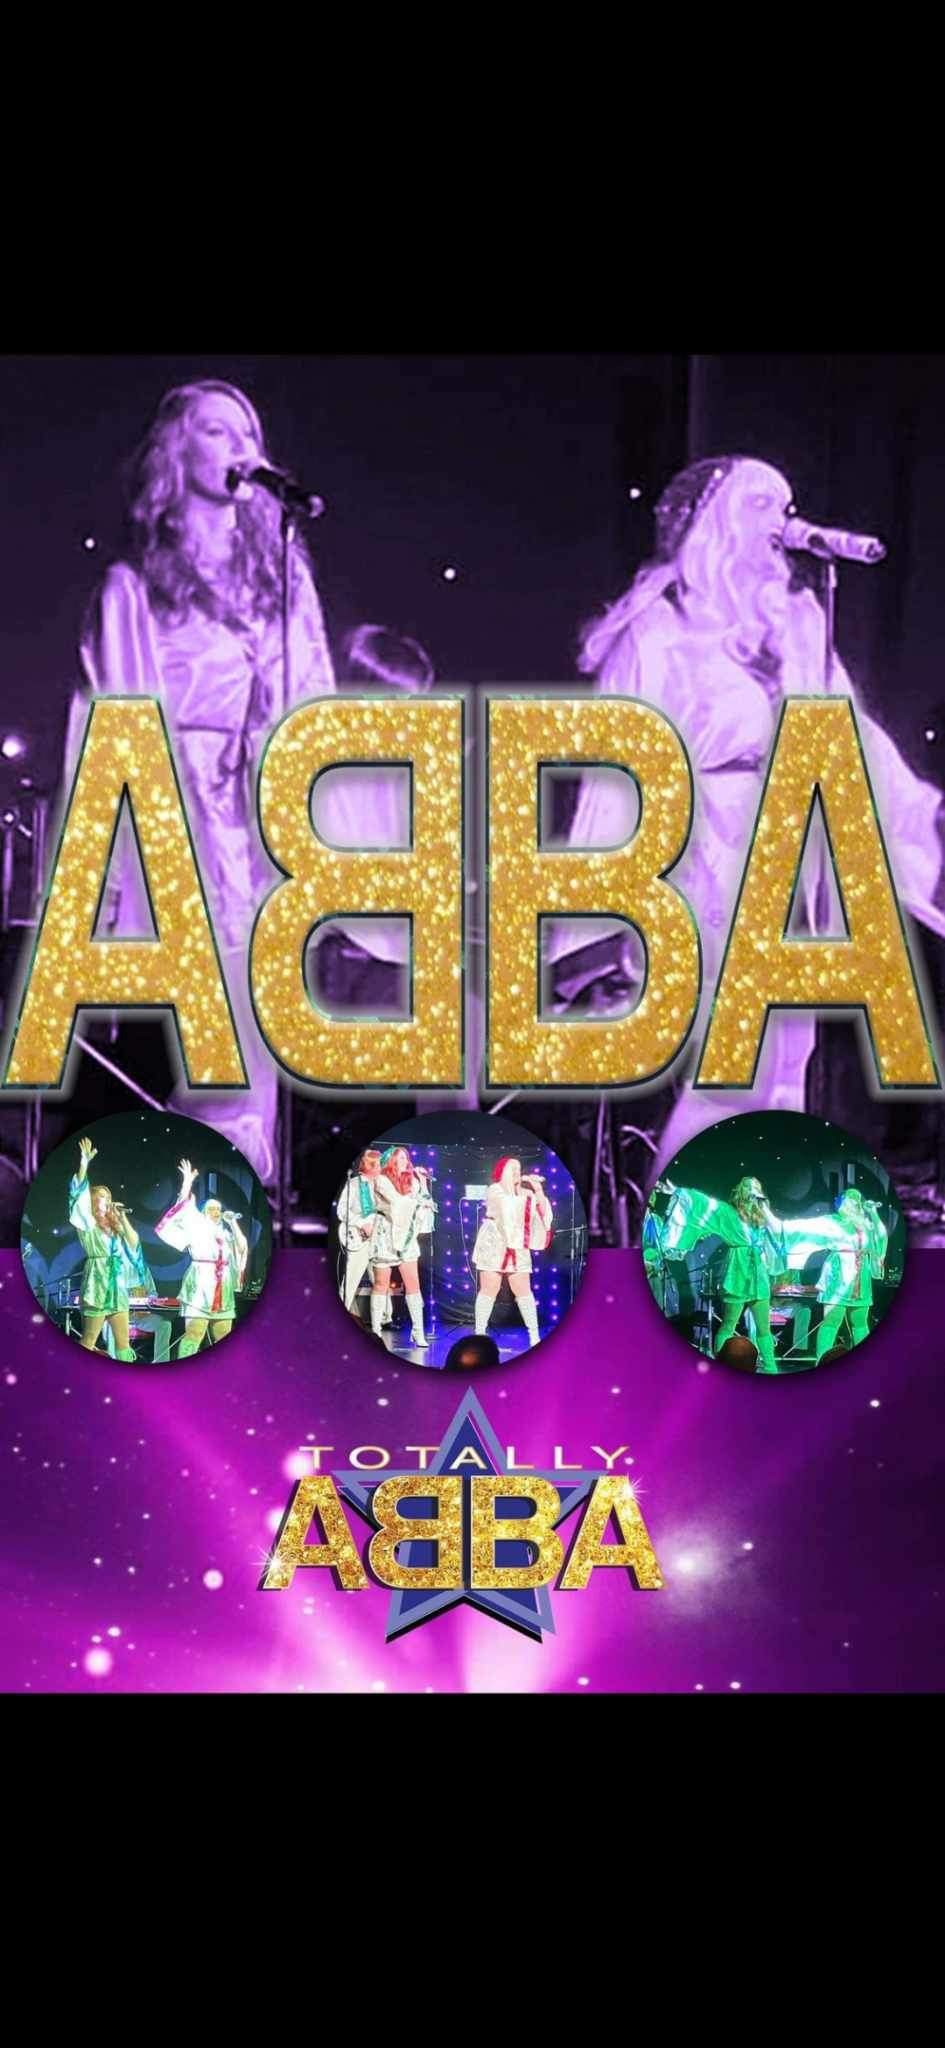 Totally ABBA Duo  on juin 15, 19:30@Benwick village hall - Achetez des billets et obtenez des informations surwhittlesey music nights 